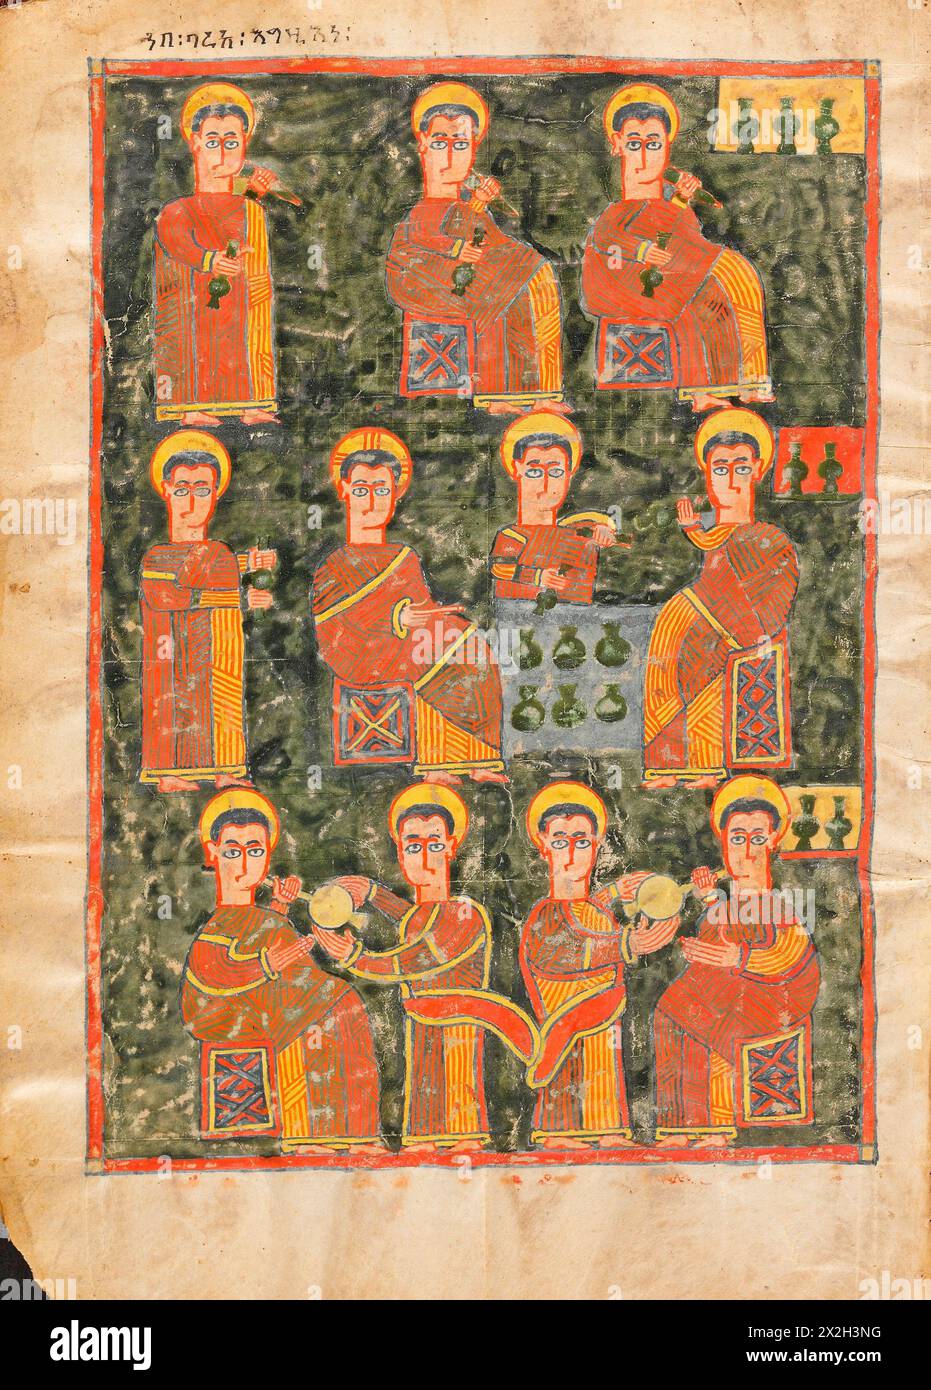 Evangile illuminé - peuples Amhara -le miracle au mariage à Cana- fin du XIVe au début du XVe siècle Banque D'Images